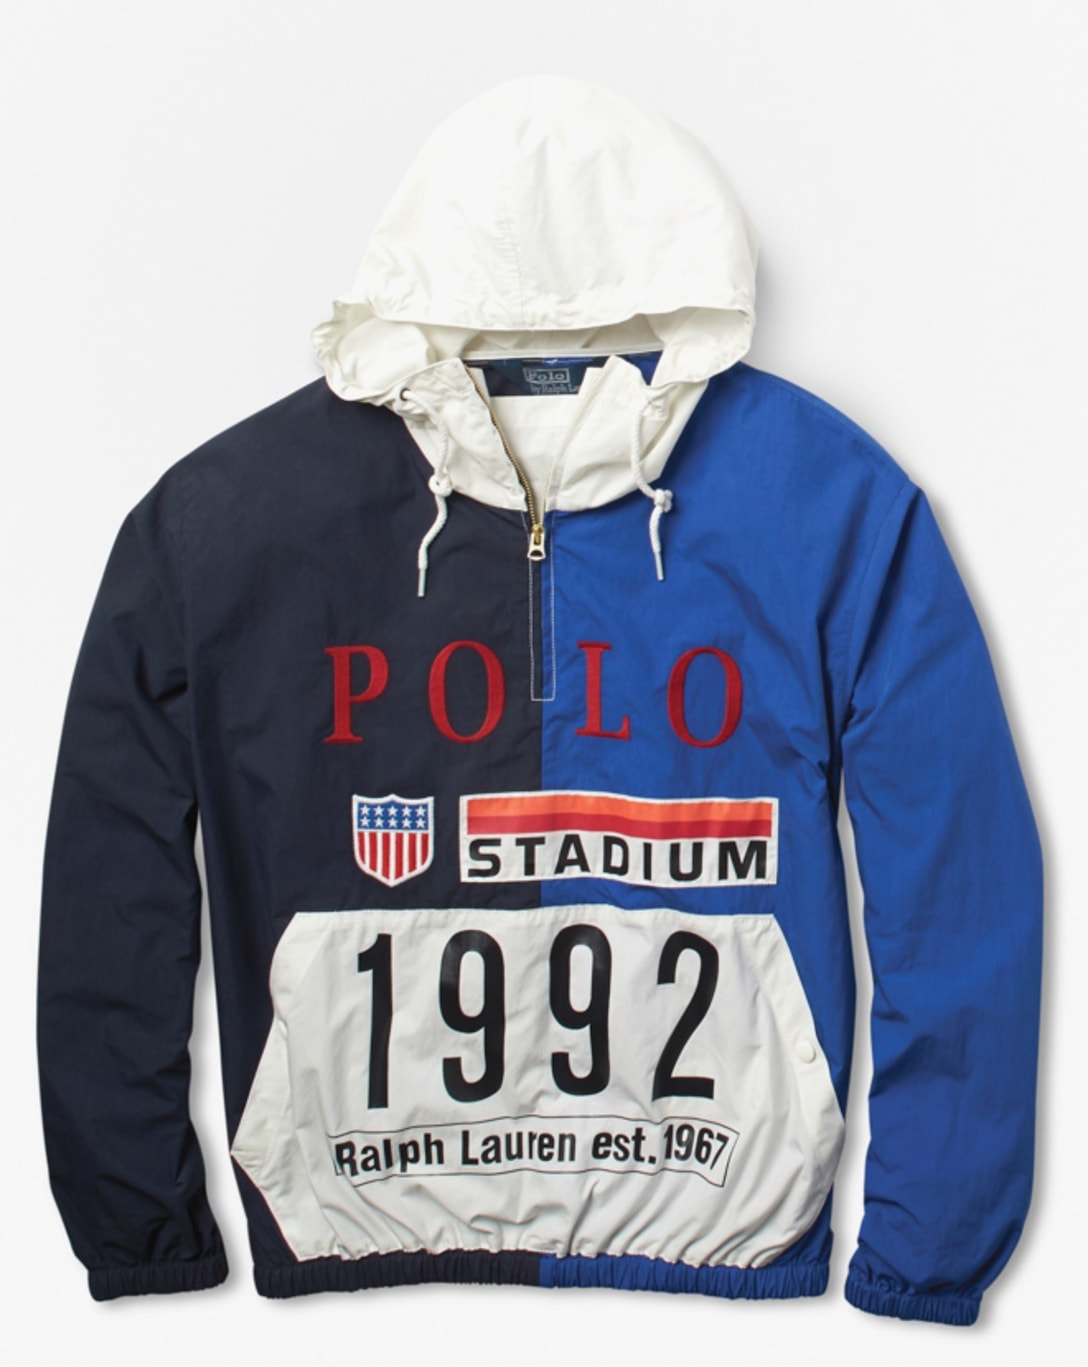 1992 polo stadium collection